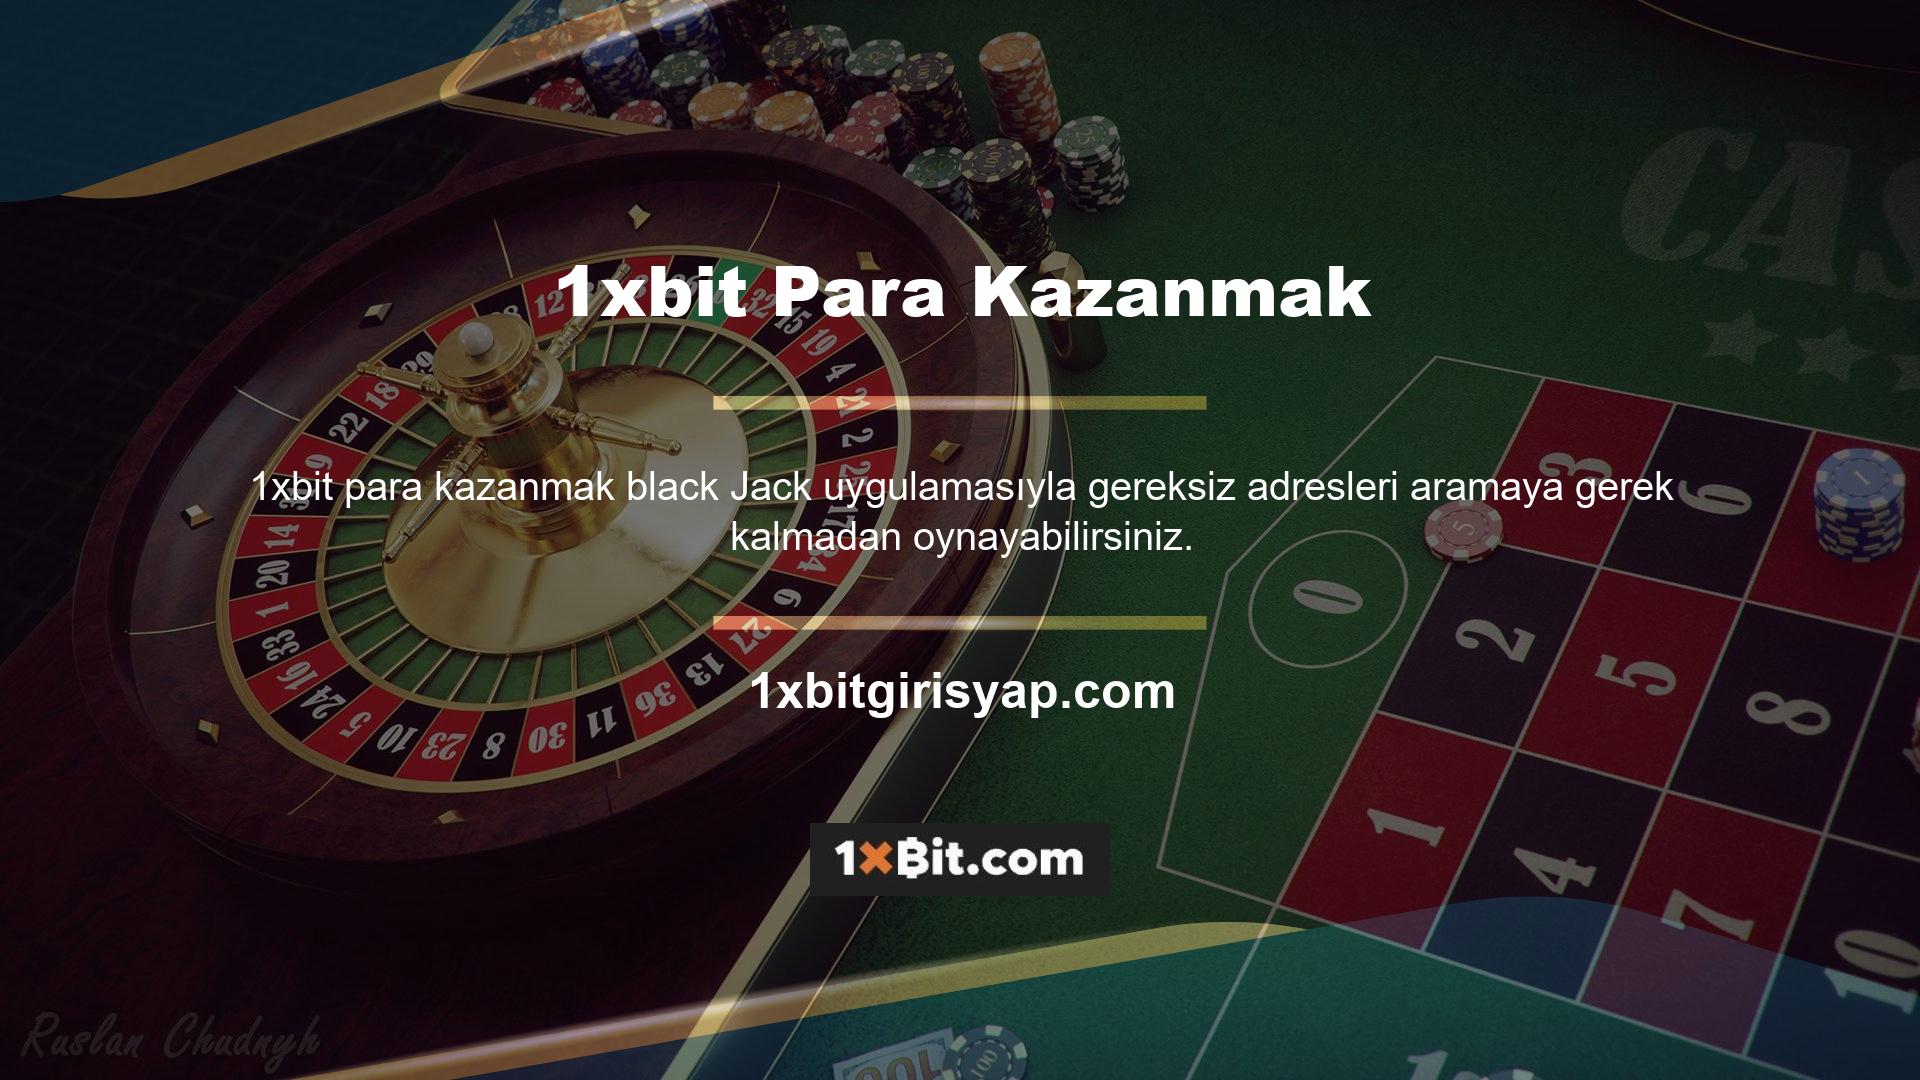 Black Jack Android sürümü, biri spor bahisleri, diğeri casino oyunları için olmak üzere iki uygulama içerir